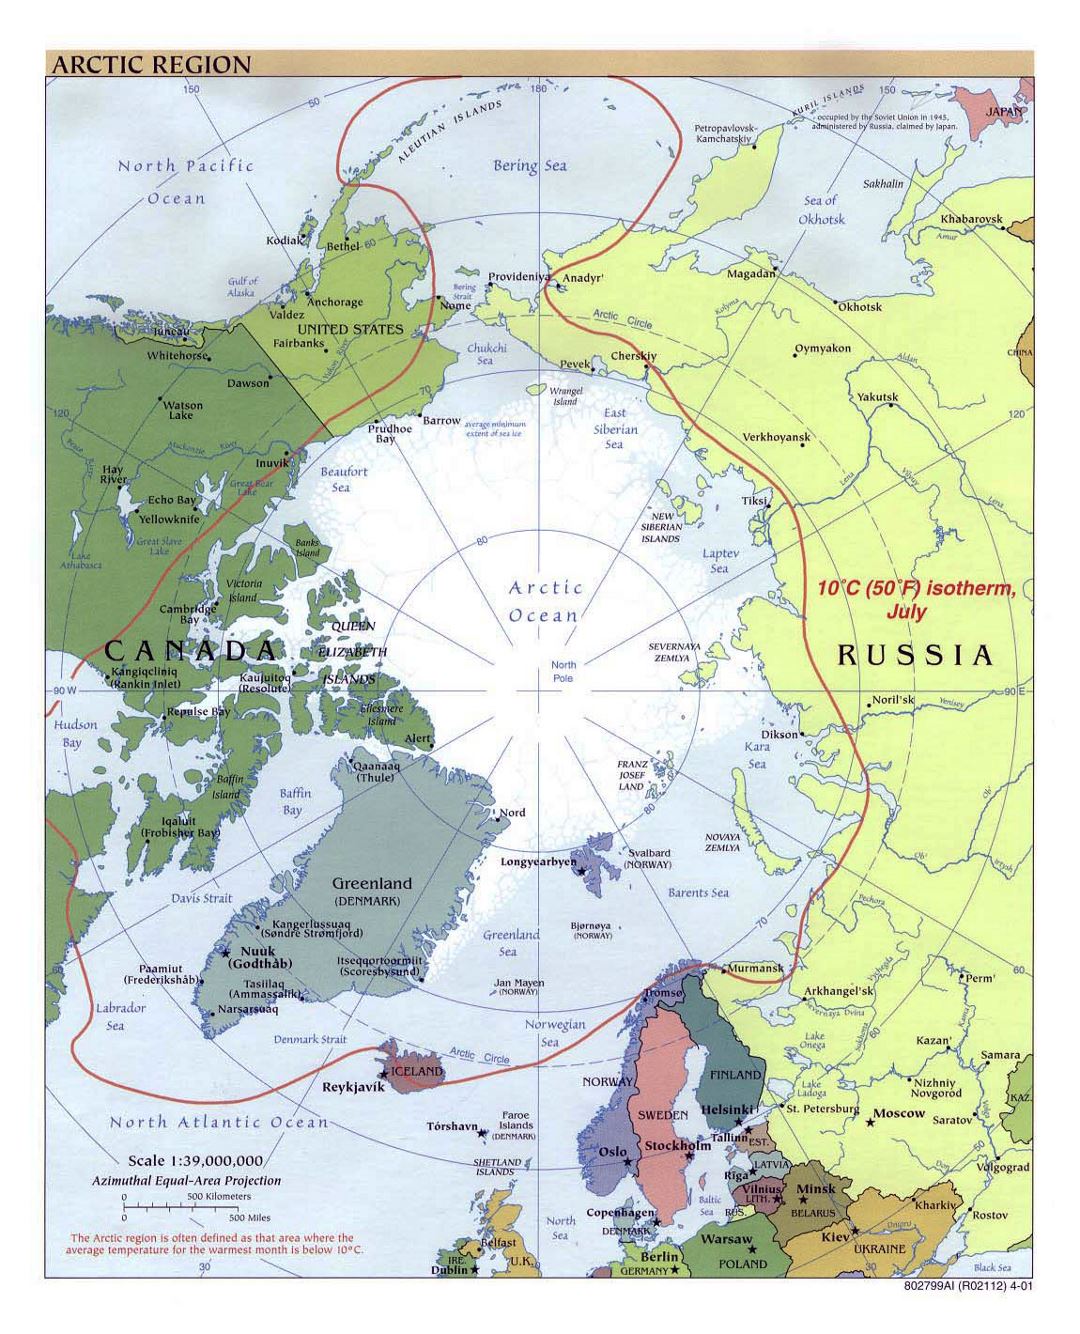 Mapa político grande de la Región Ártica - 2001